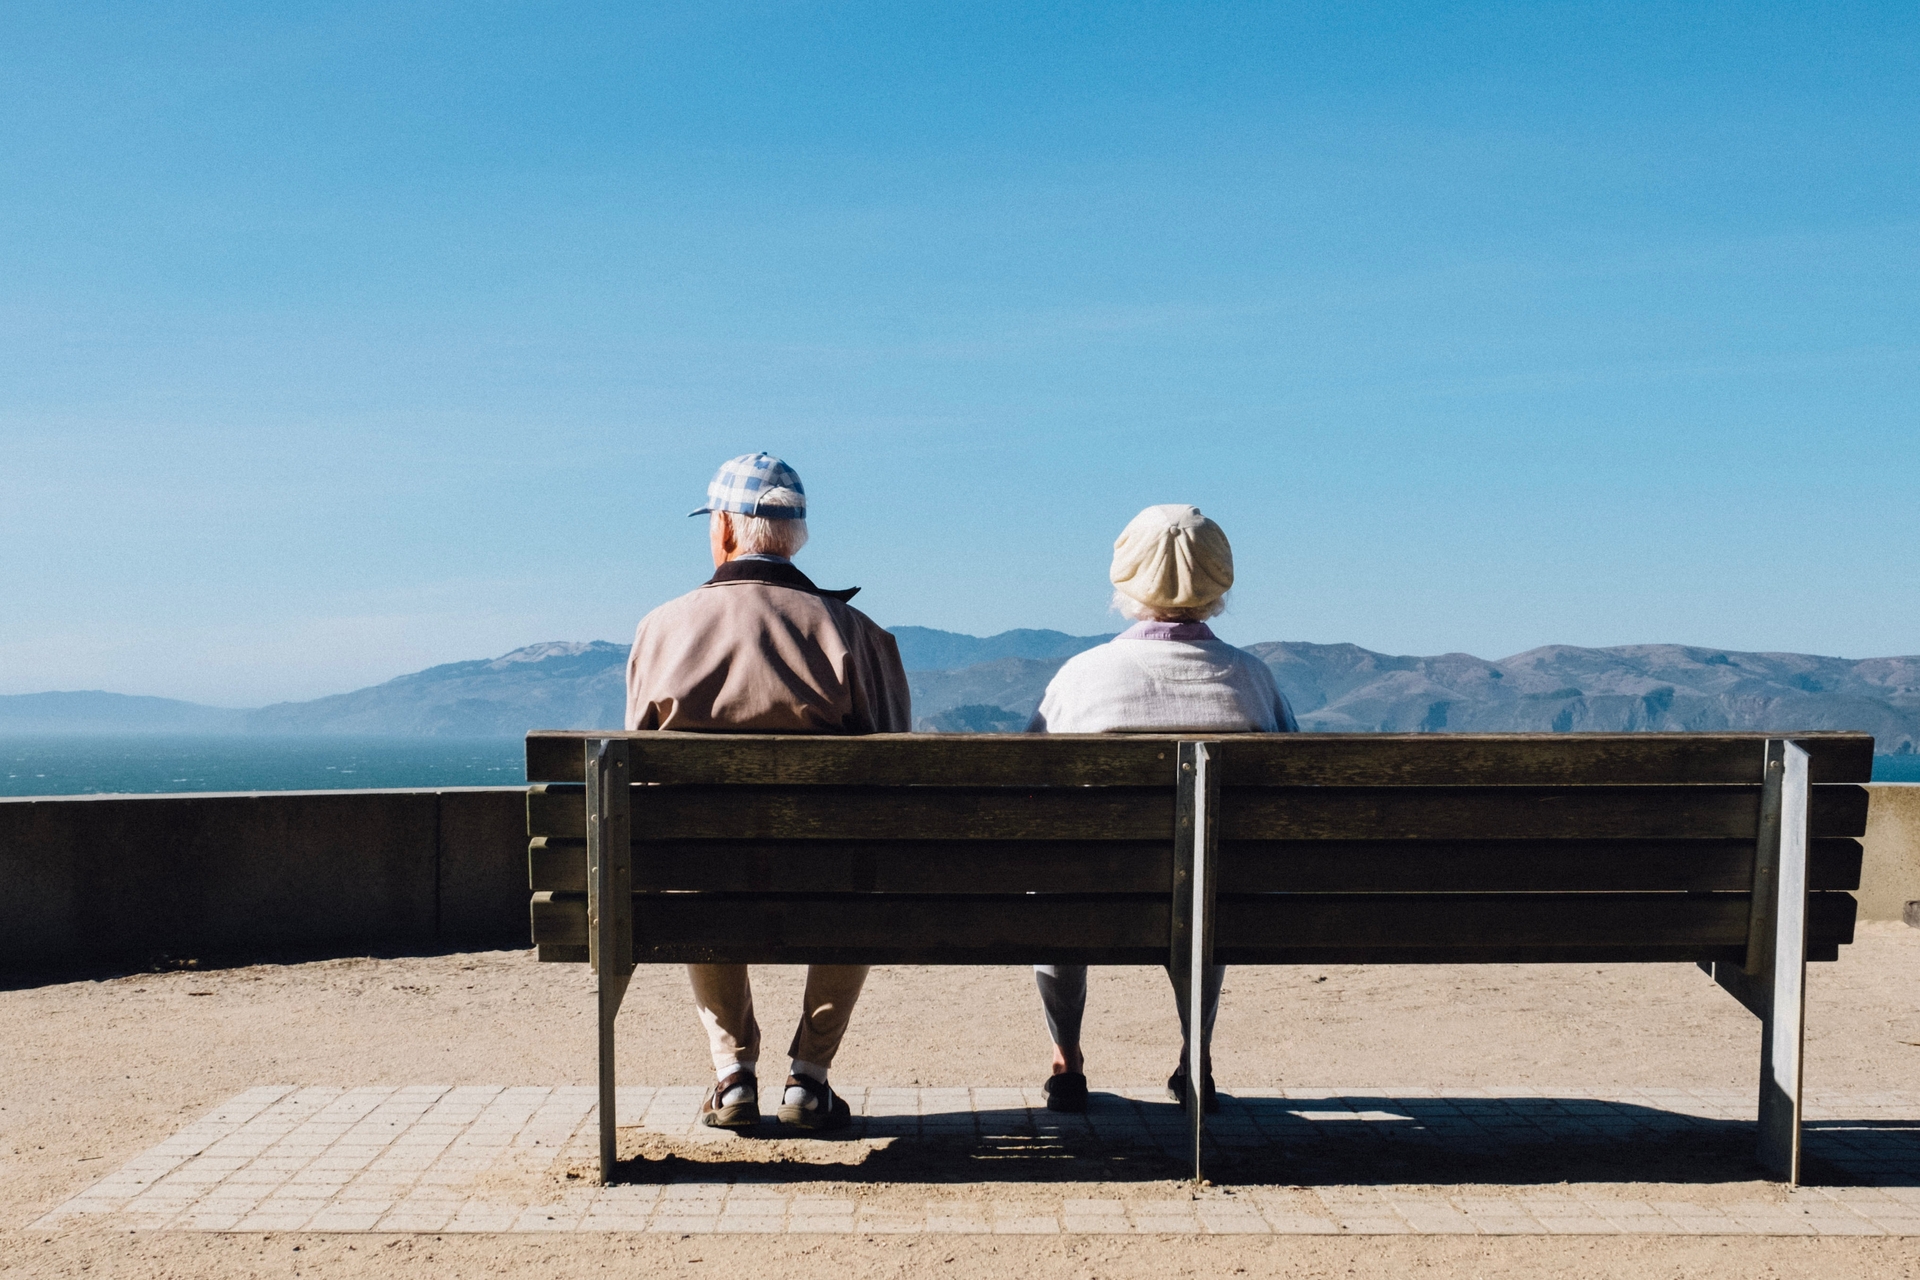 Bí quyết từ những người sống khỏe đến trăm tuổi: Làm gì để gia tăng tuổi thọ?